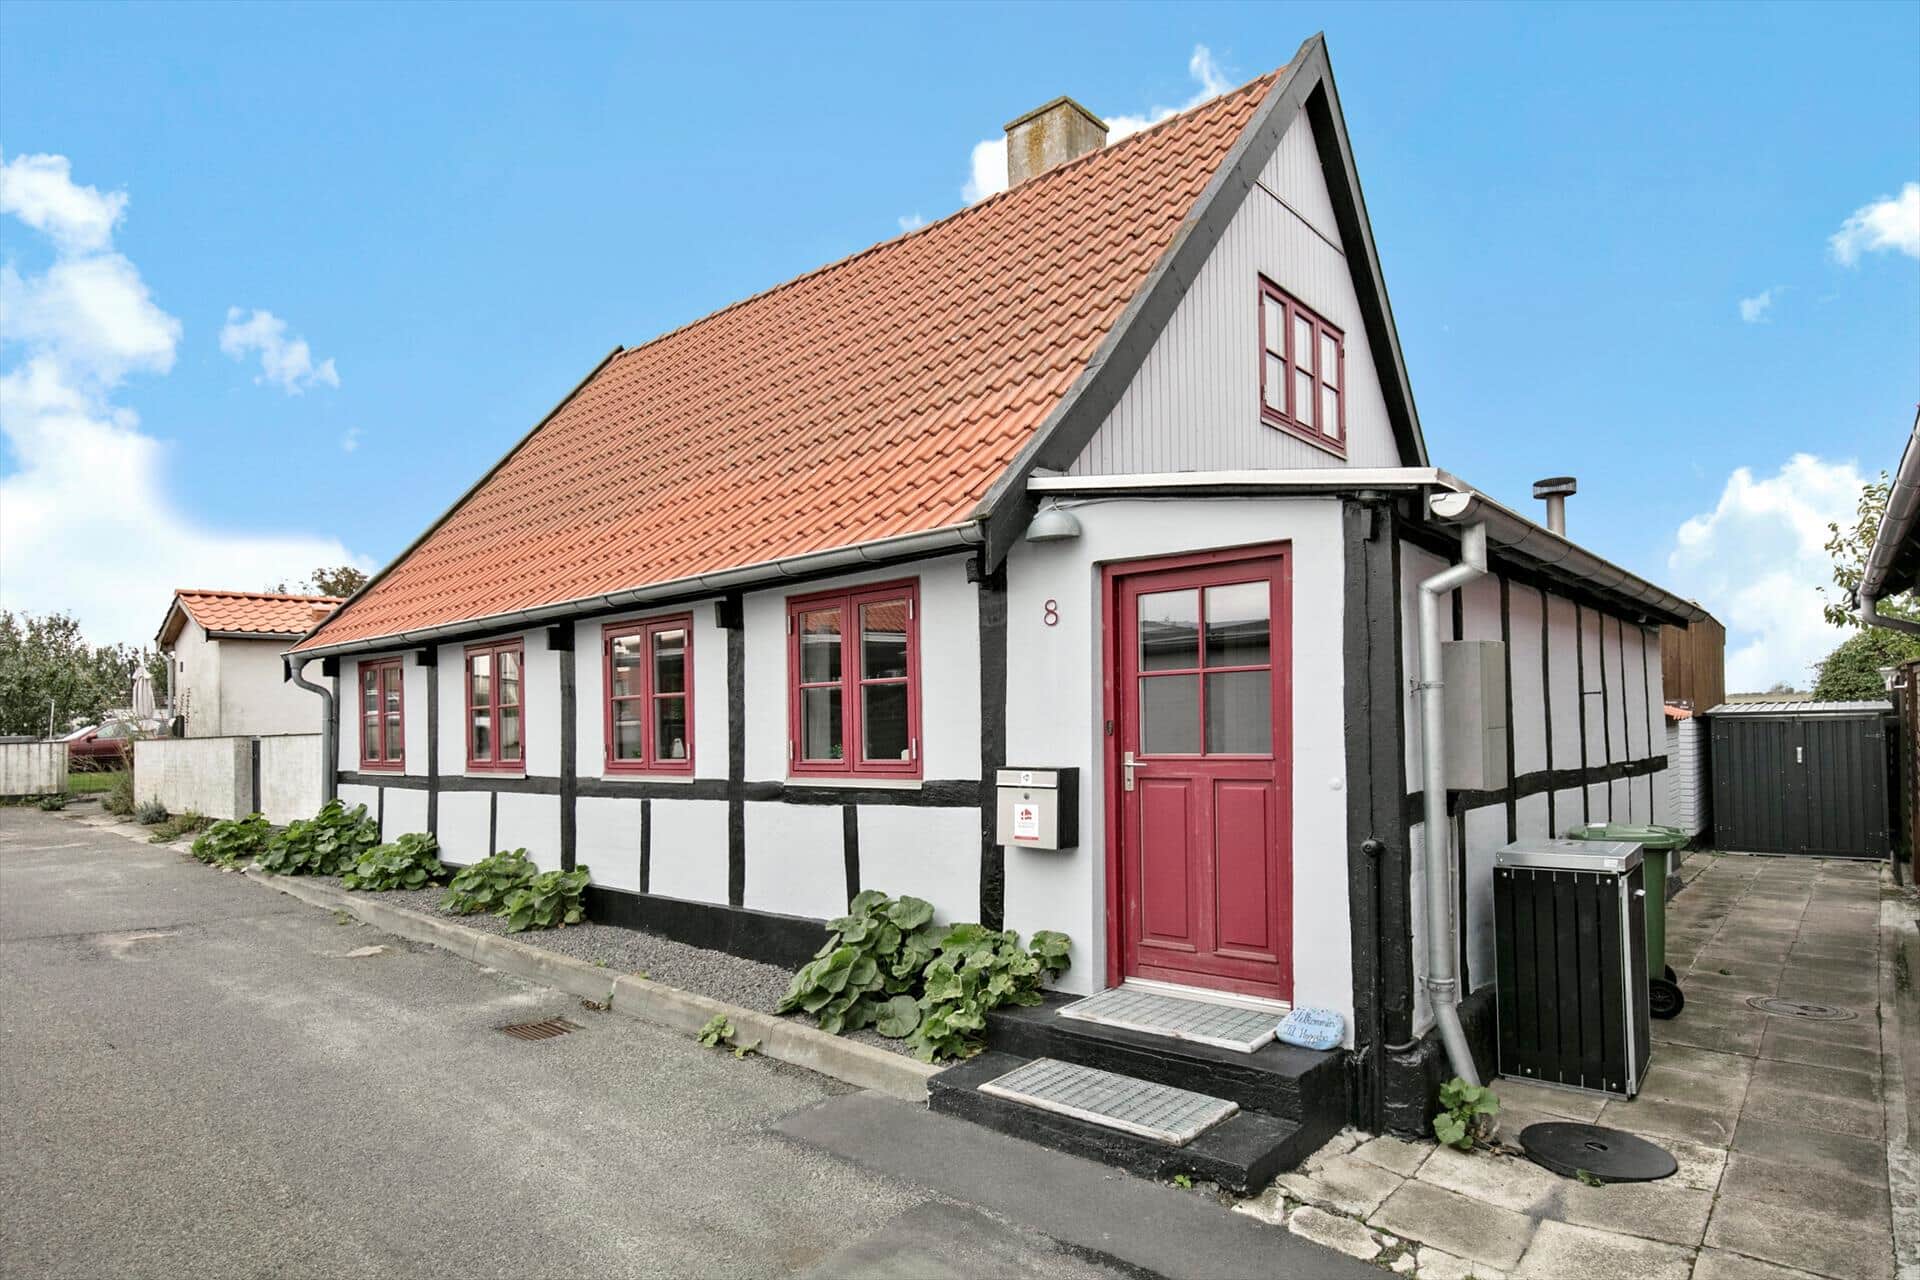 Bild 0-10 Ferienhaus 4734, Varpeløkken 8, DK - 3700 Rønne